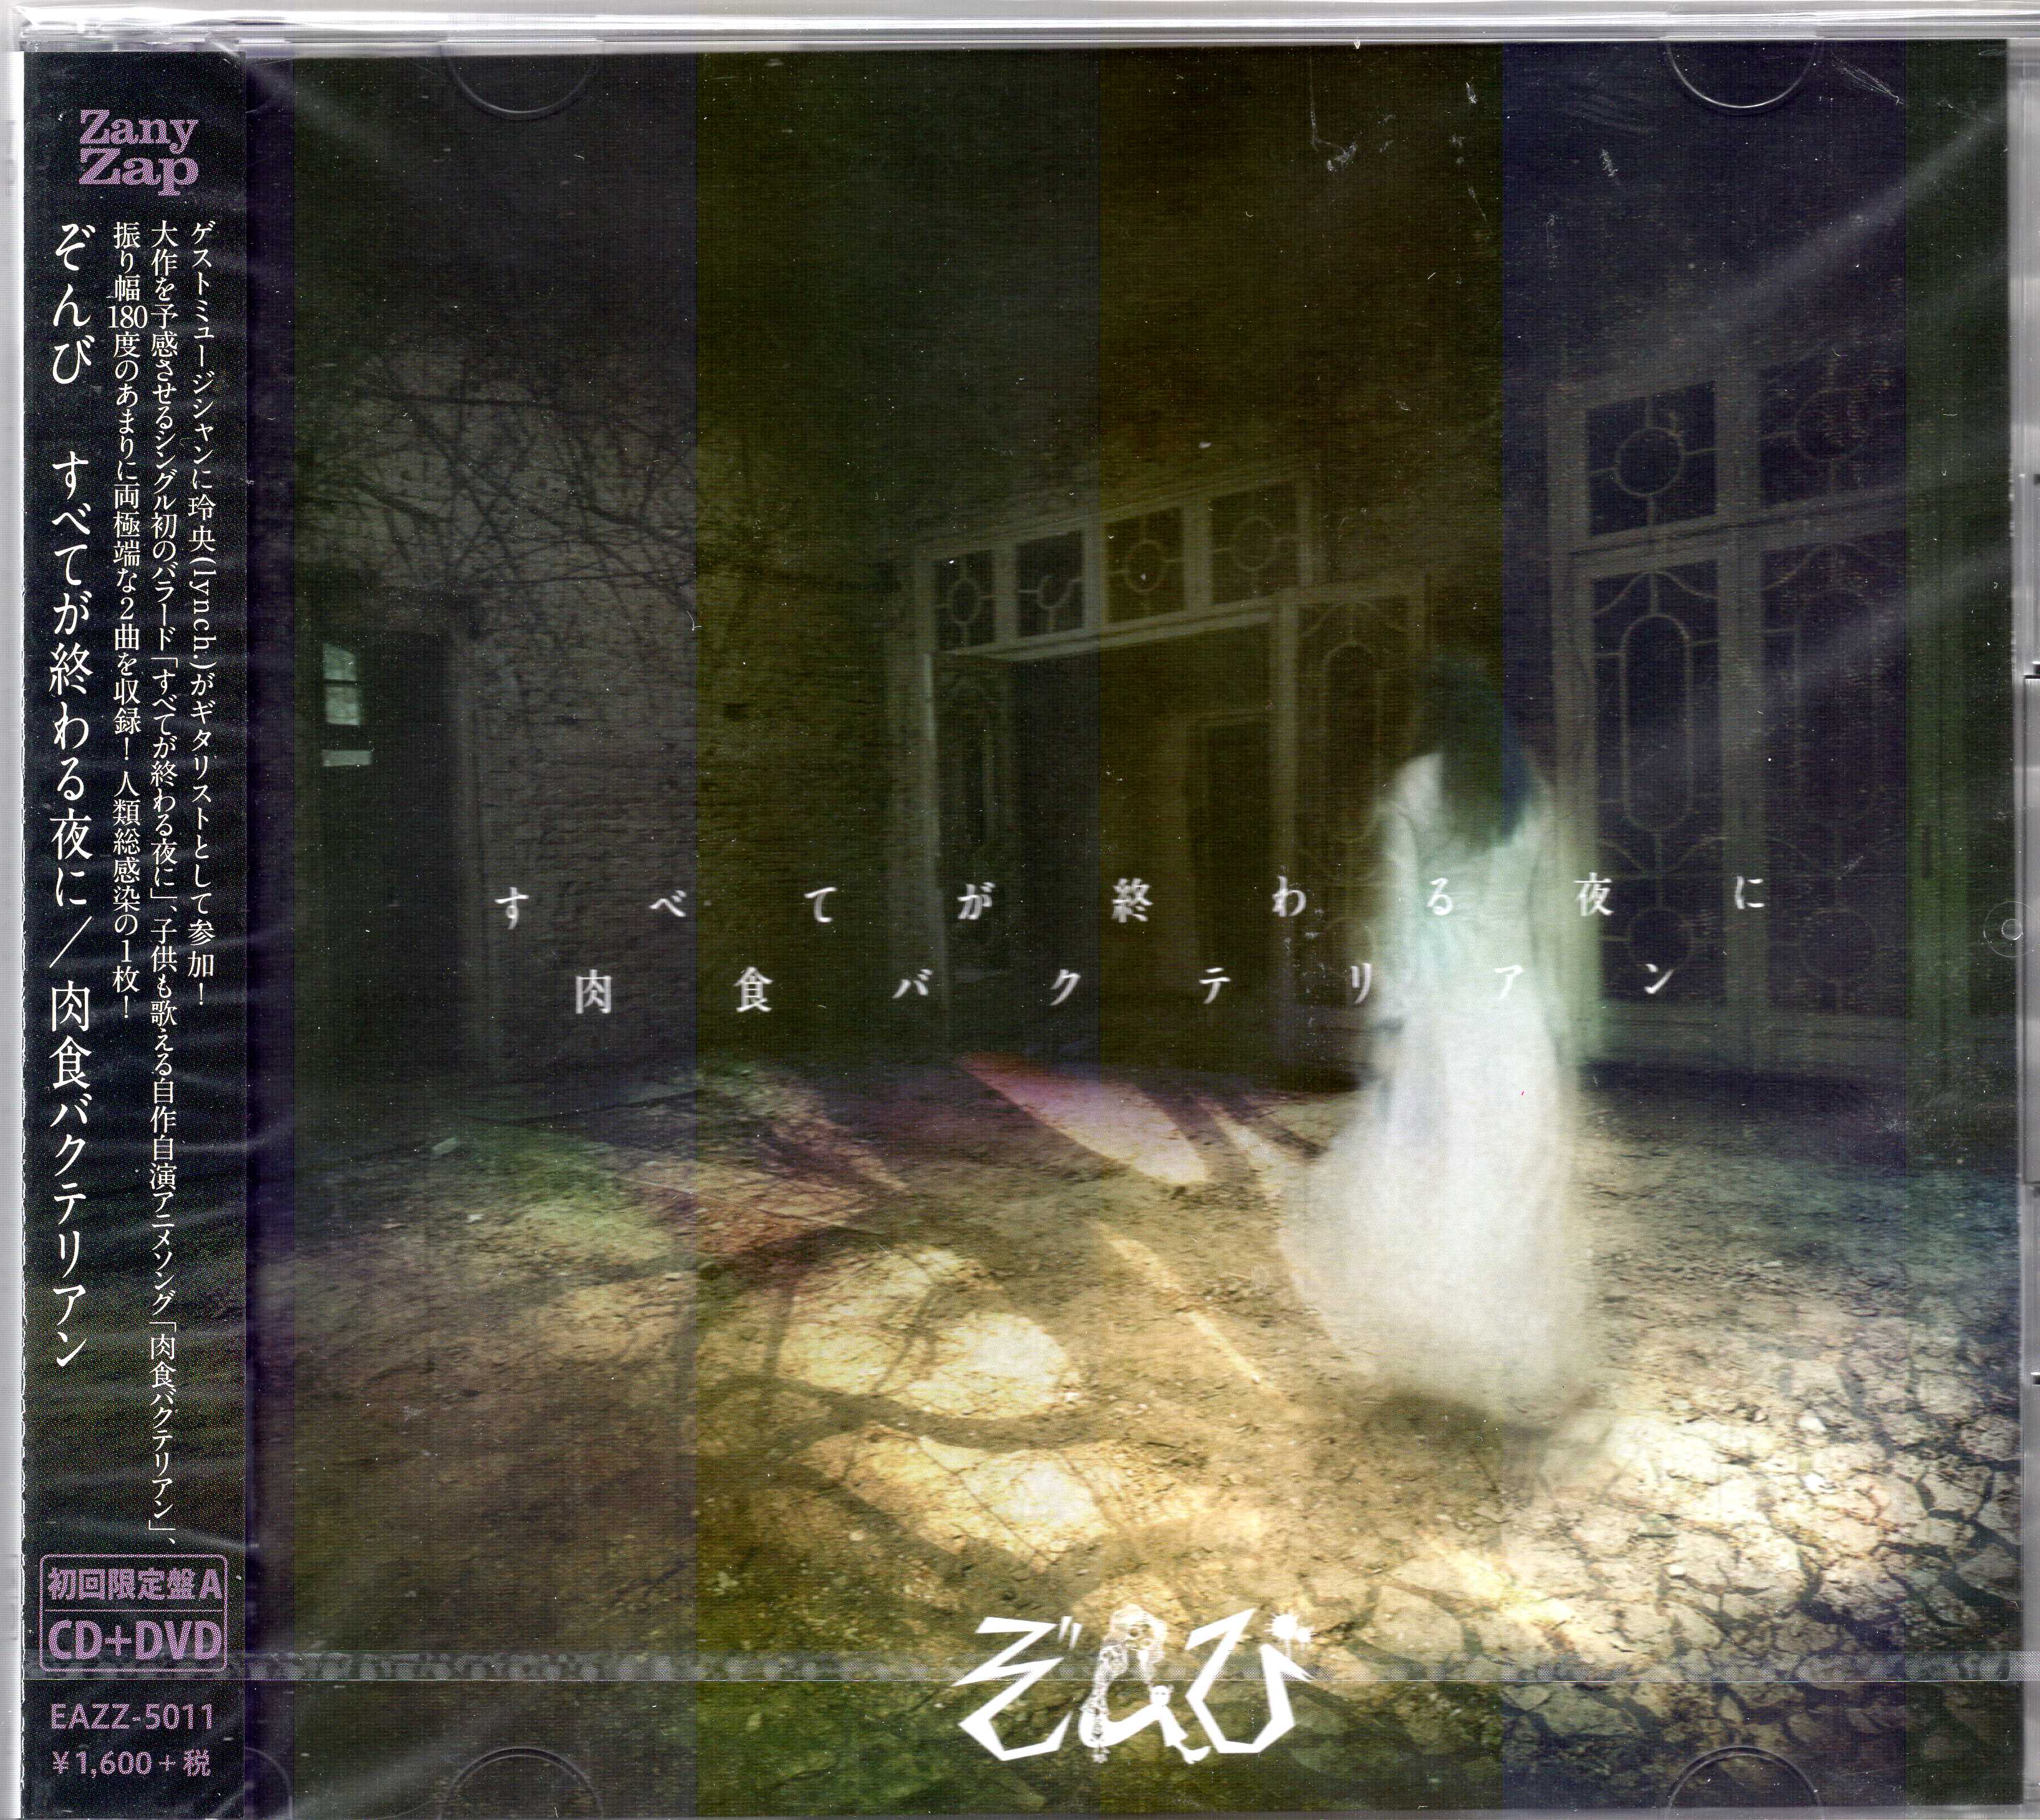 ZOMBIE(ぞんび) ( ゾンビ )  の CD 【初回盤A】すべてが終わる夜に/肉食バクテリアン